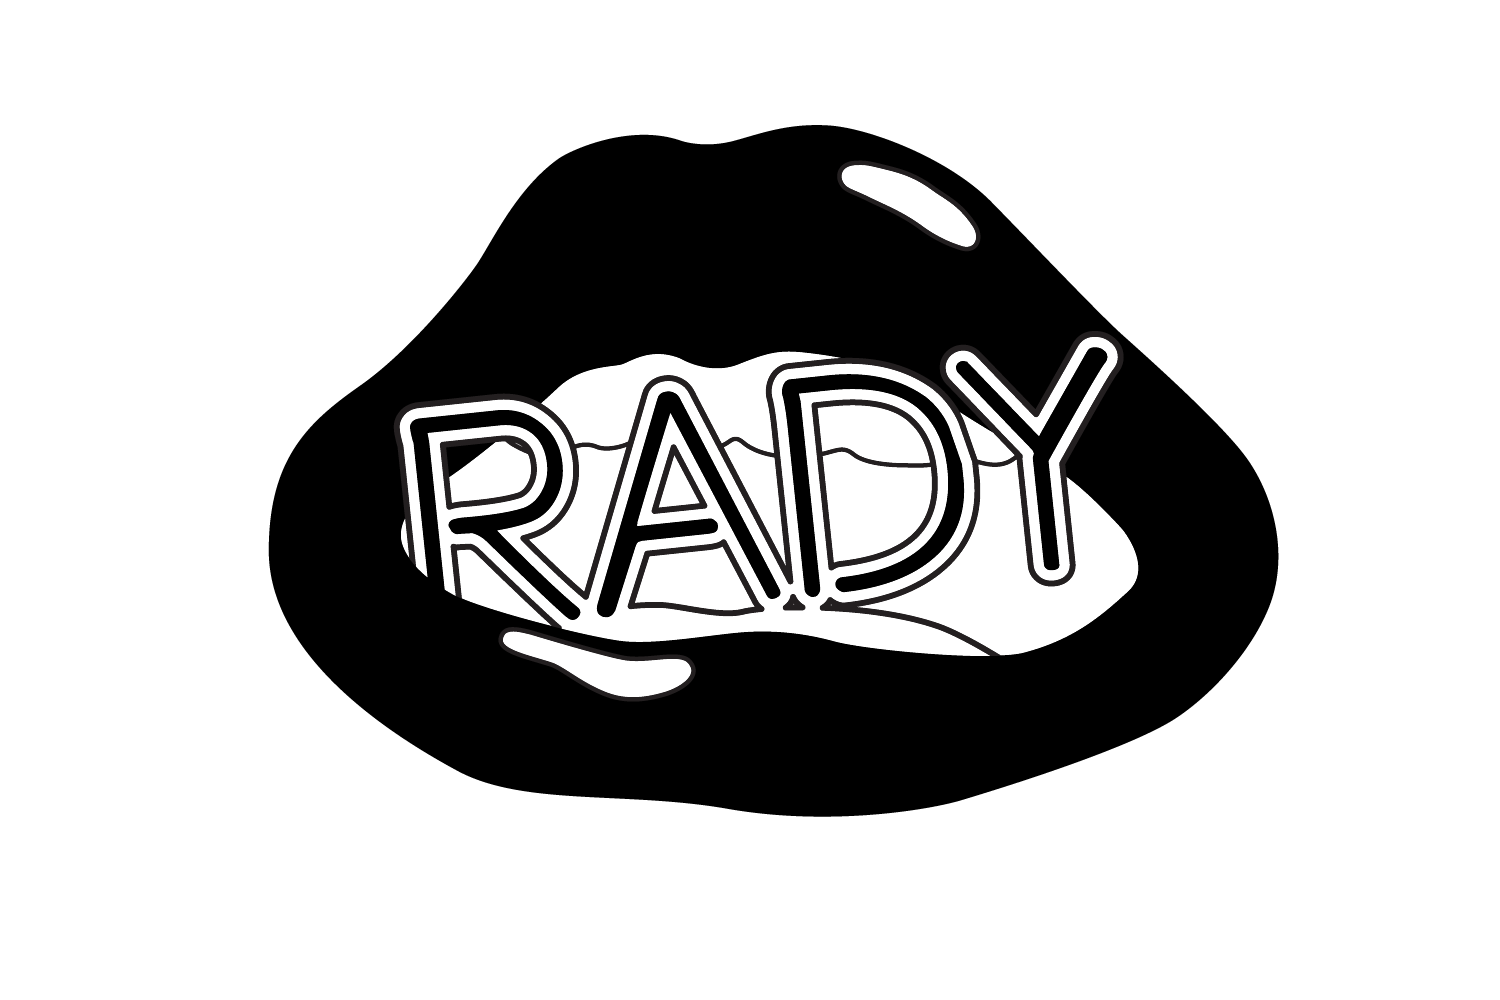 RADY